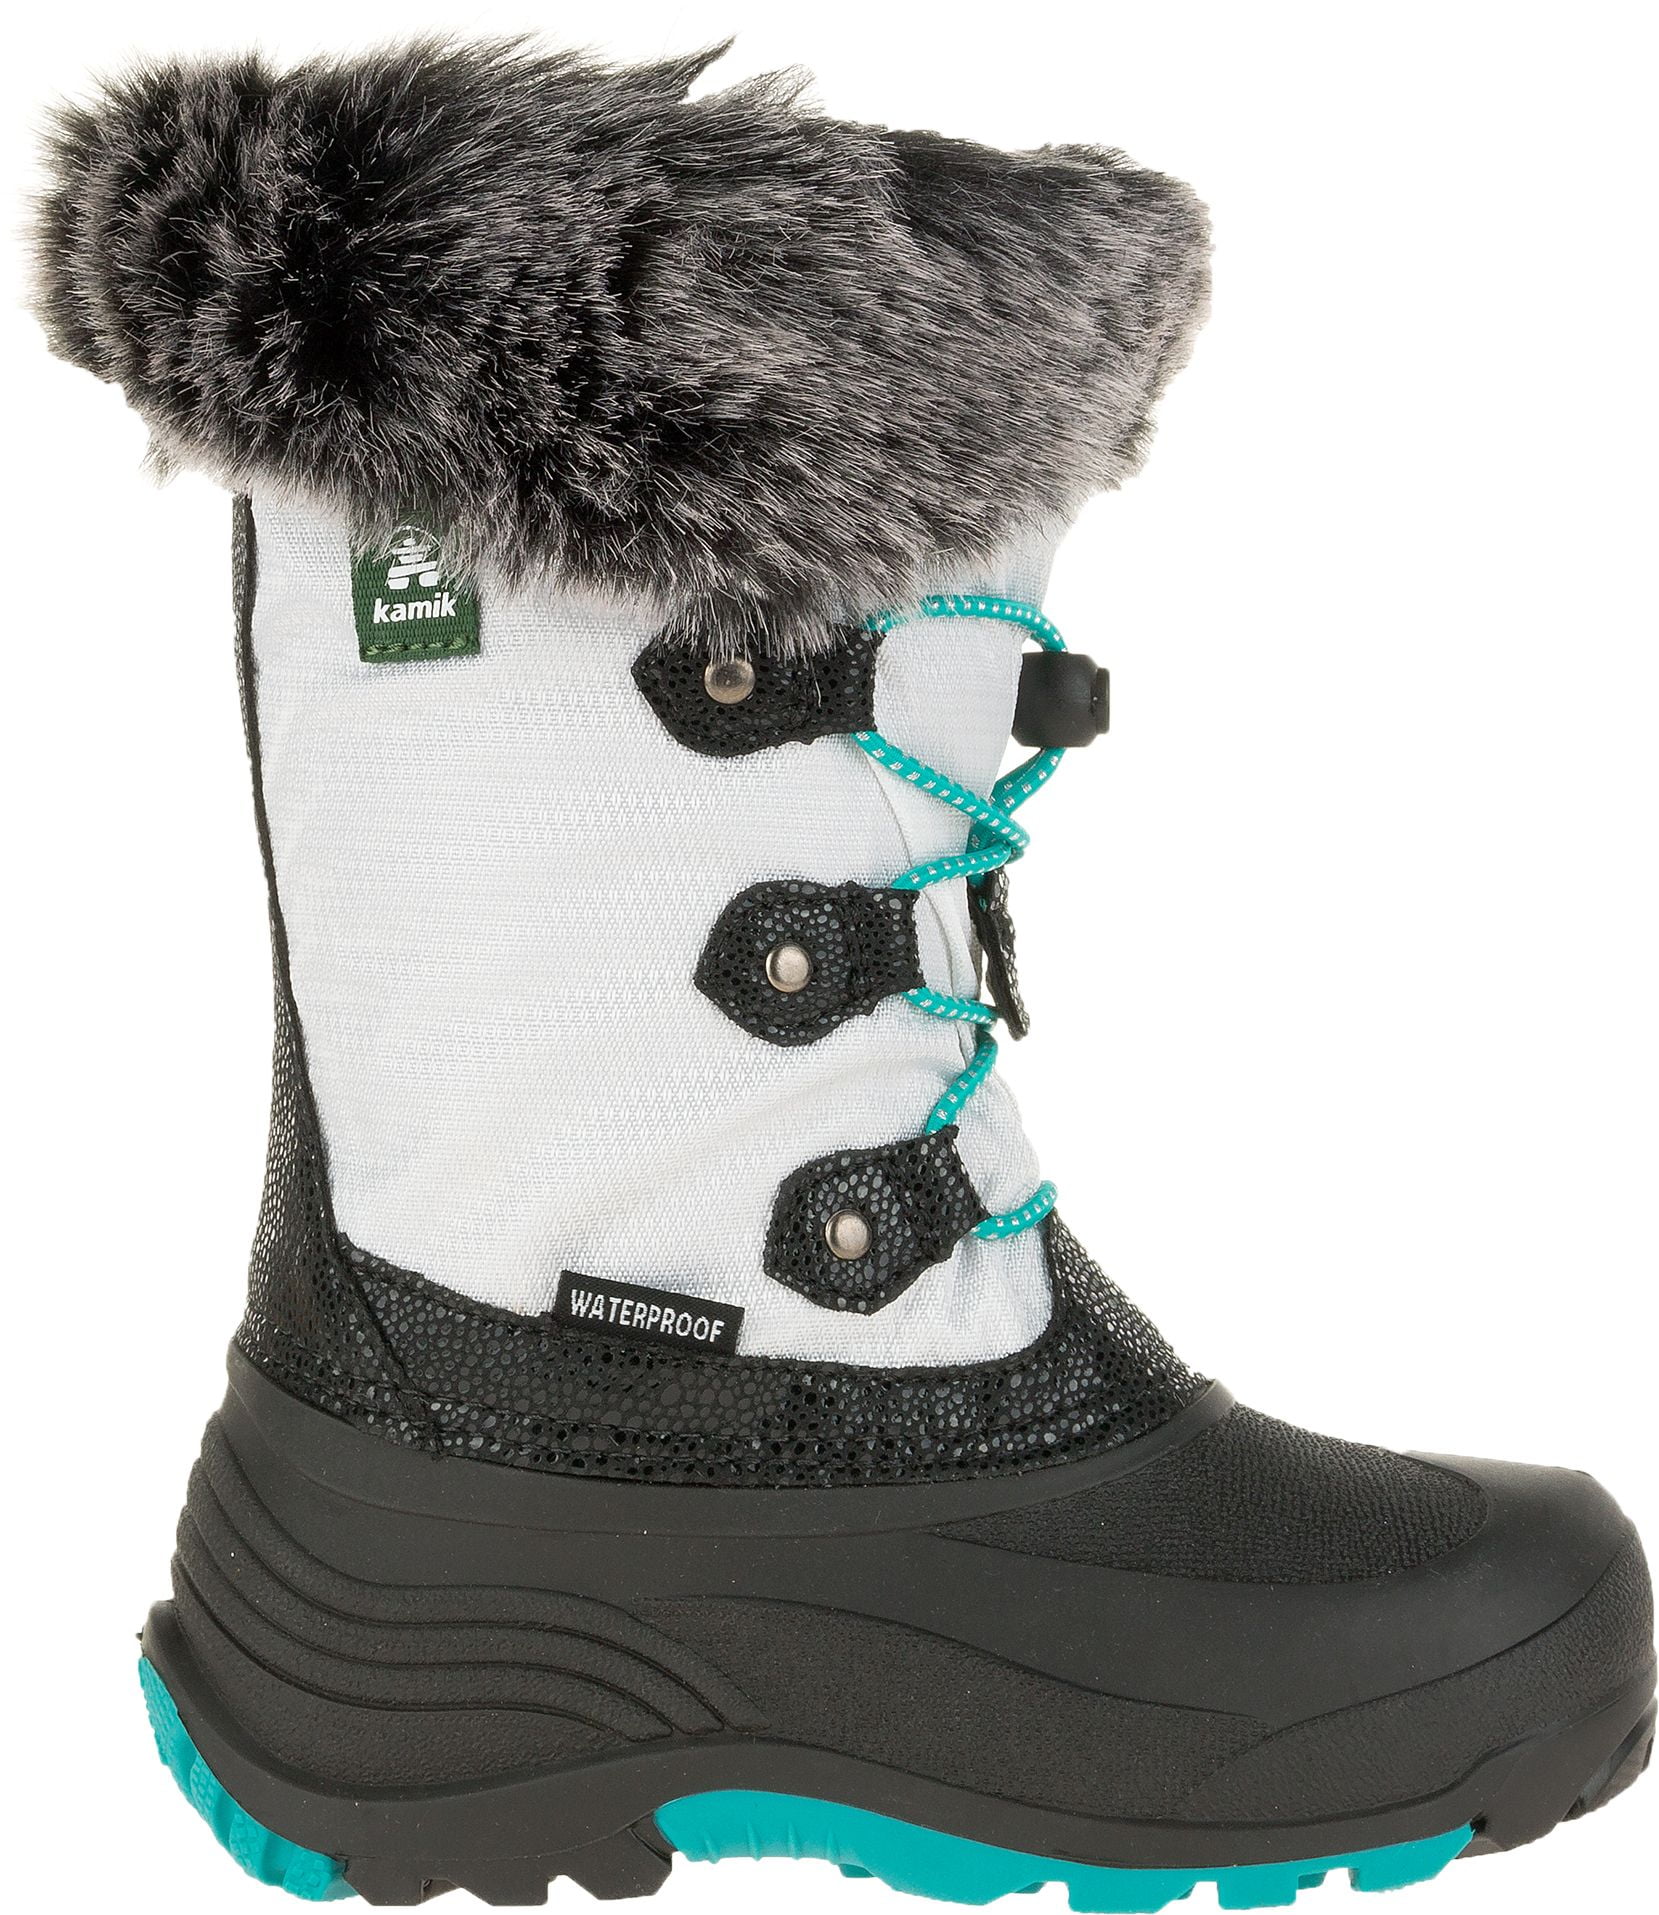 walmart winter boots girls